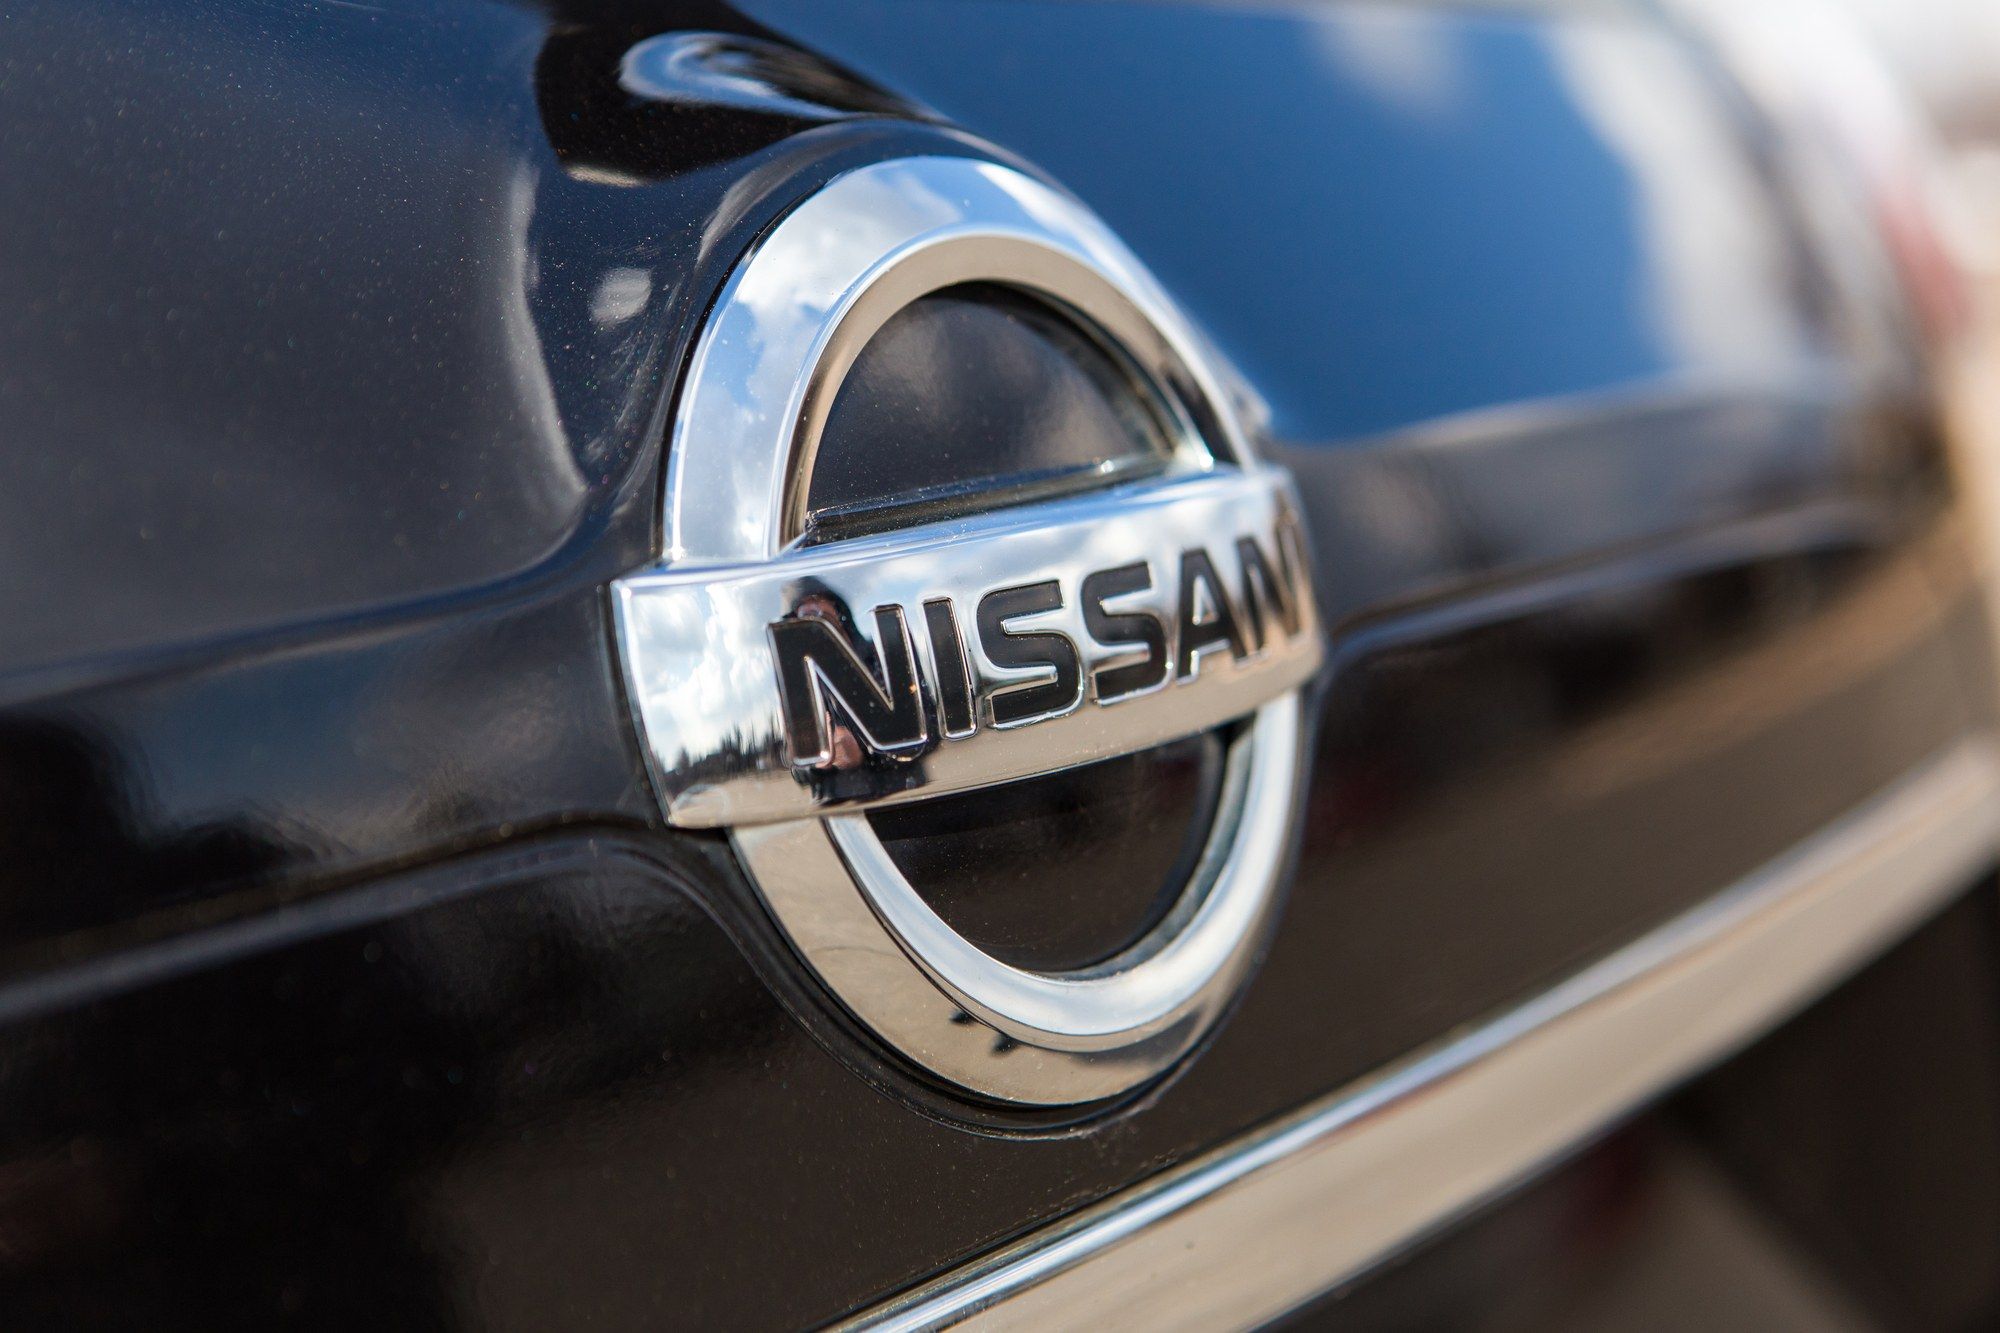 2014-2016 Nissan Rogue CVT transmissions defective, says class action lawsuit